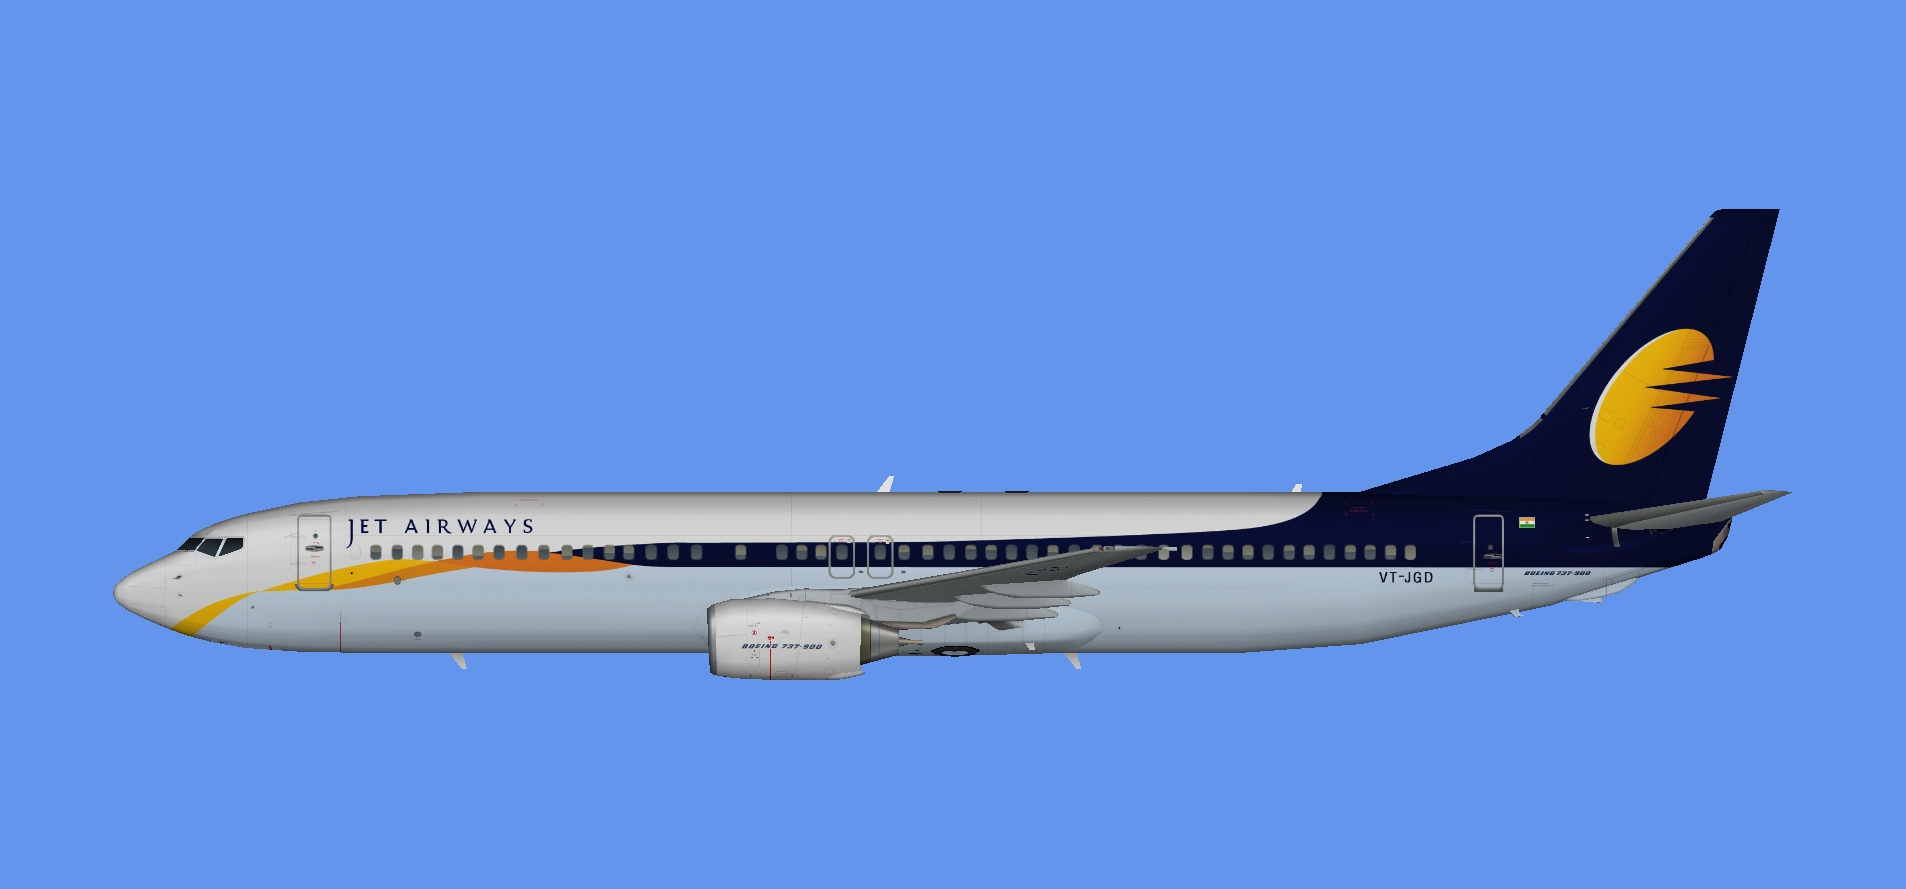 Jet Airways Boeing 737-900